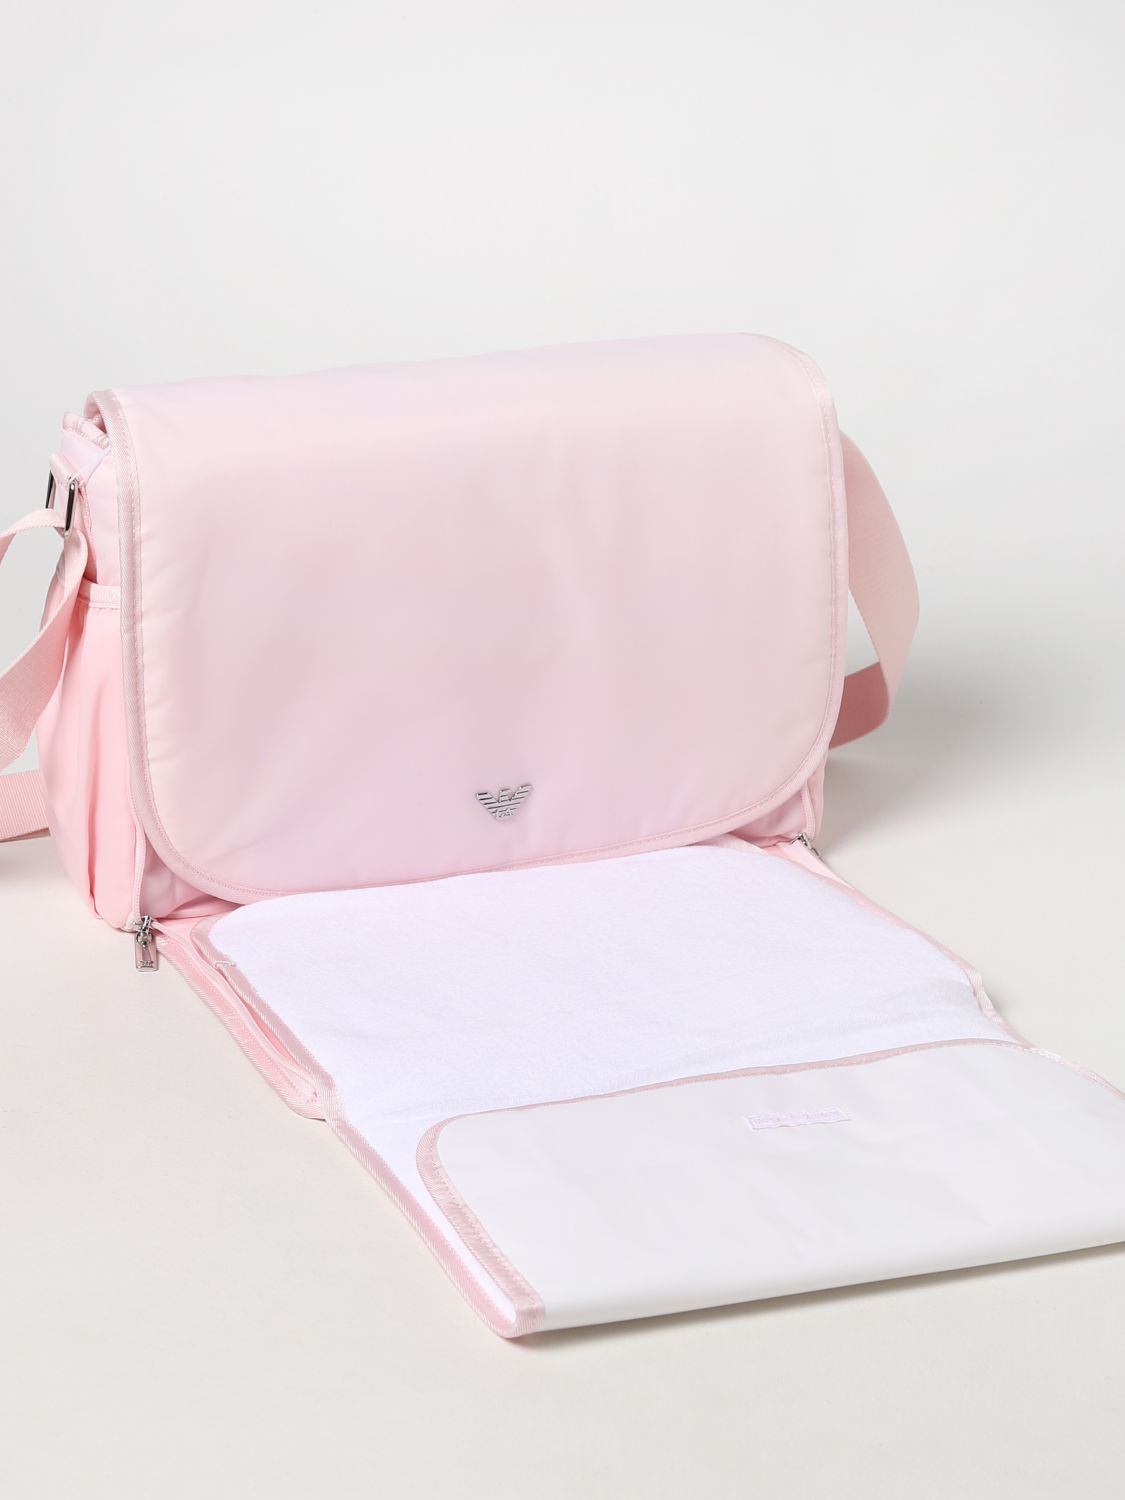 Vari per corredo Emporio Armani: Diaper bag Emporio Armani in nylon rosa 3